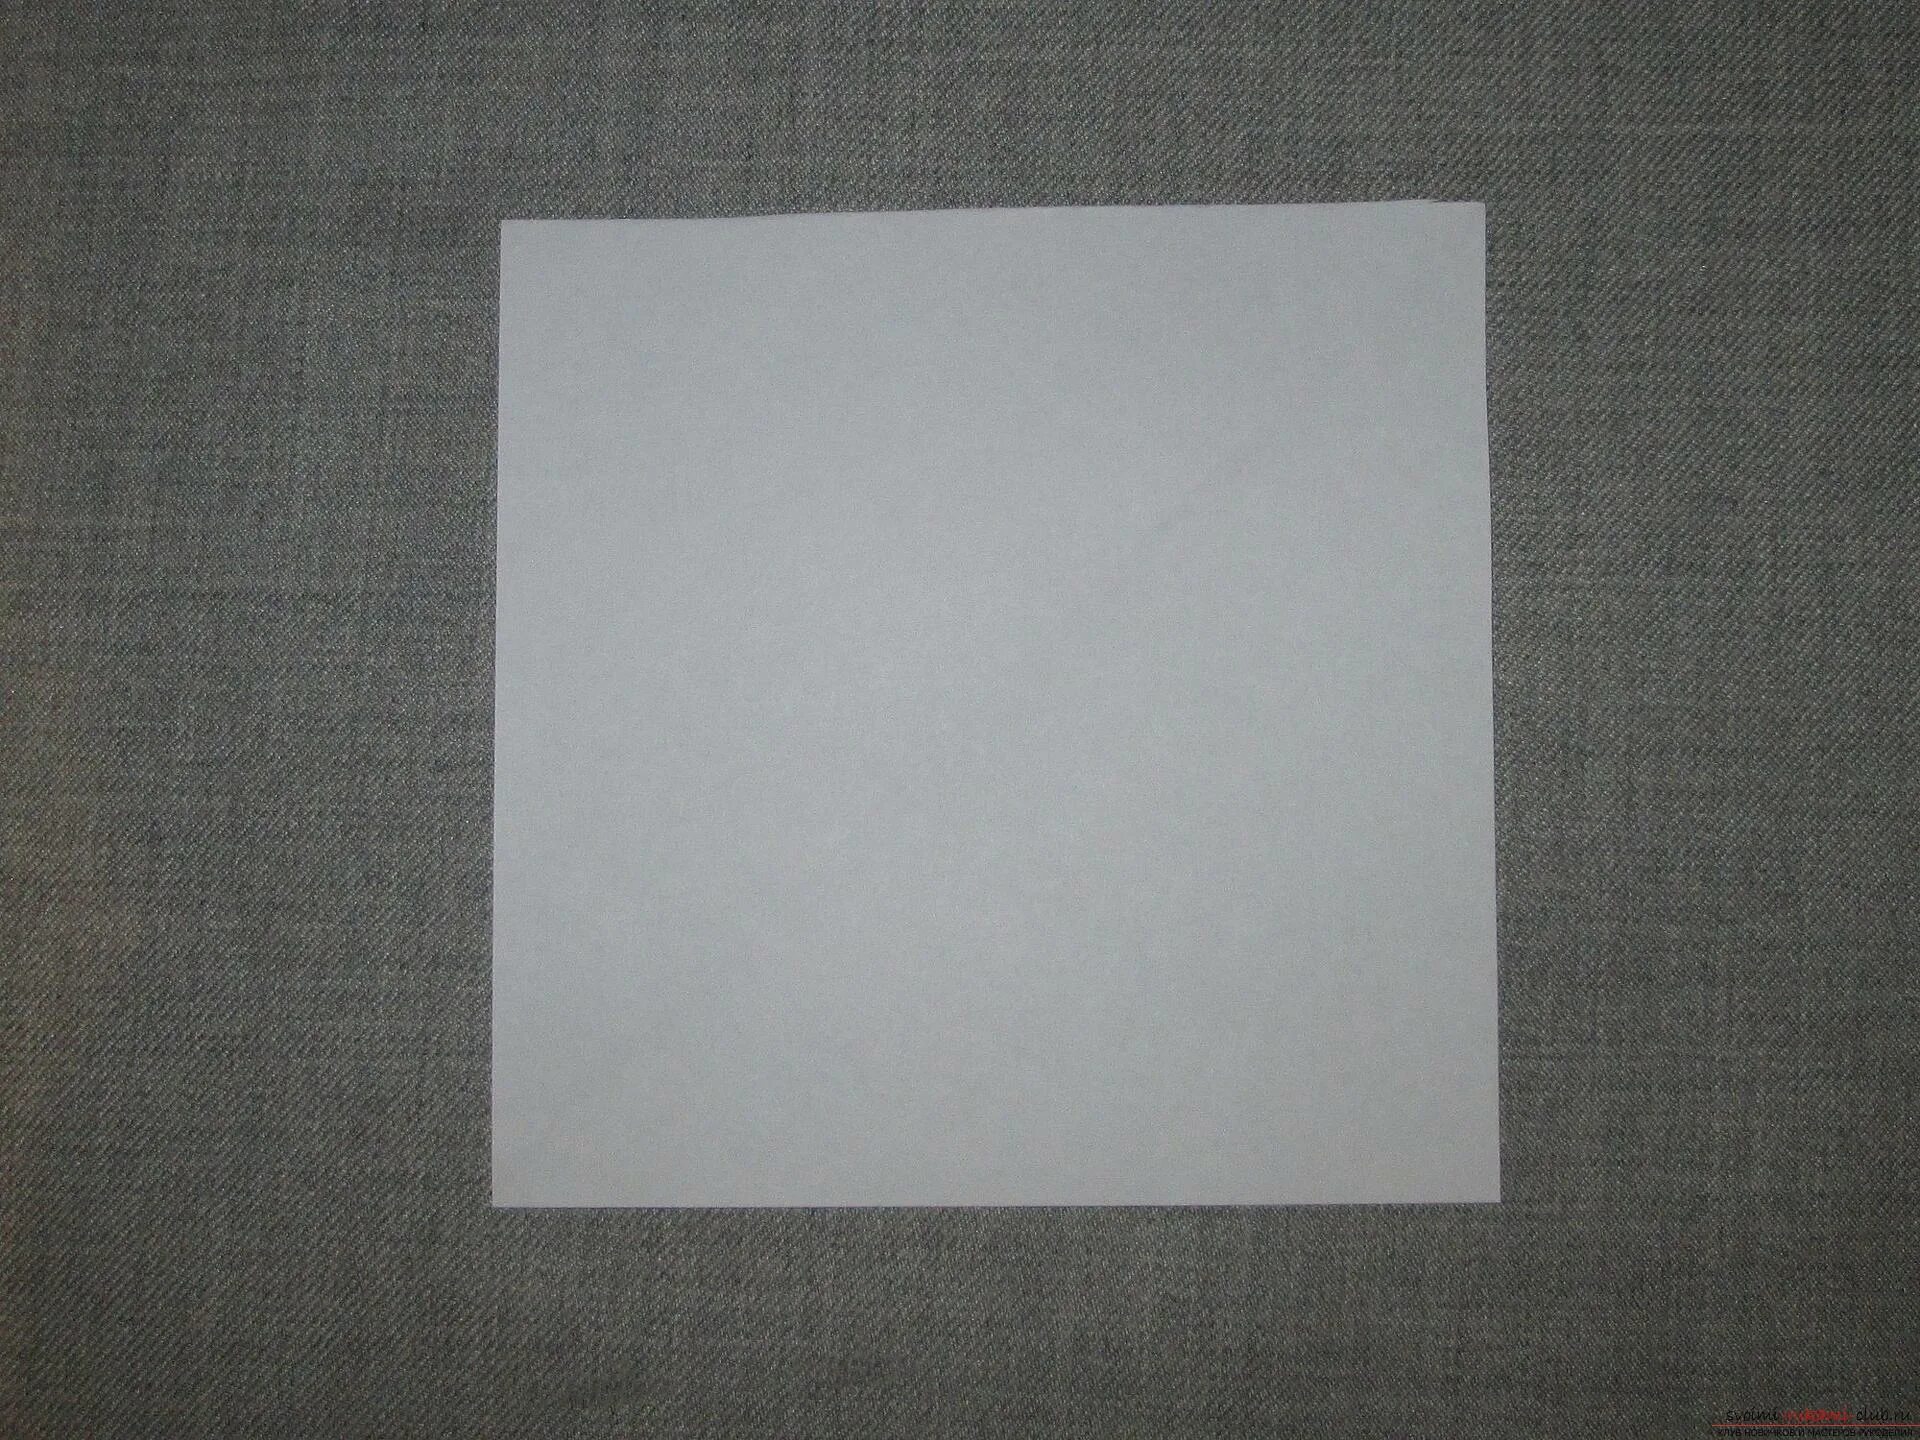 Лист бумаги квадратной формы со стороны. Квадратная бумага. Квадратный лист. Квадраттныйлист бумаги. Бумажный лист квадратный.